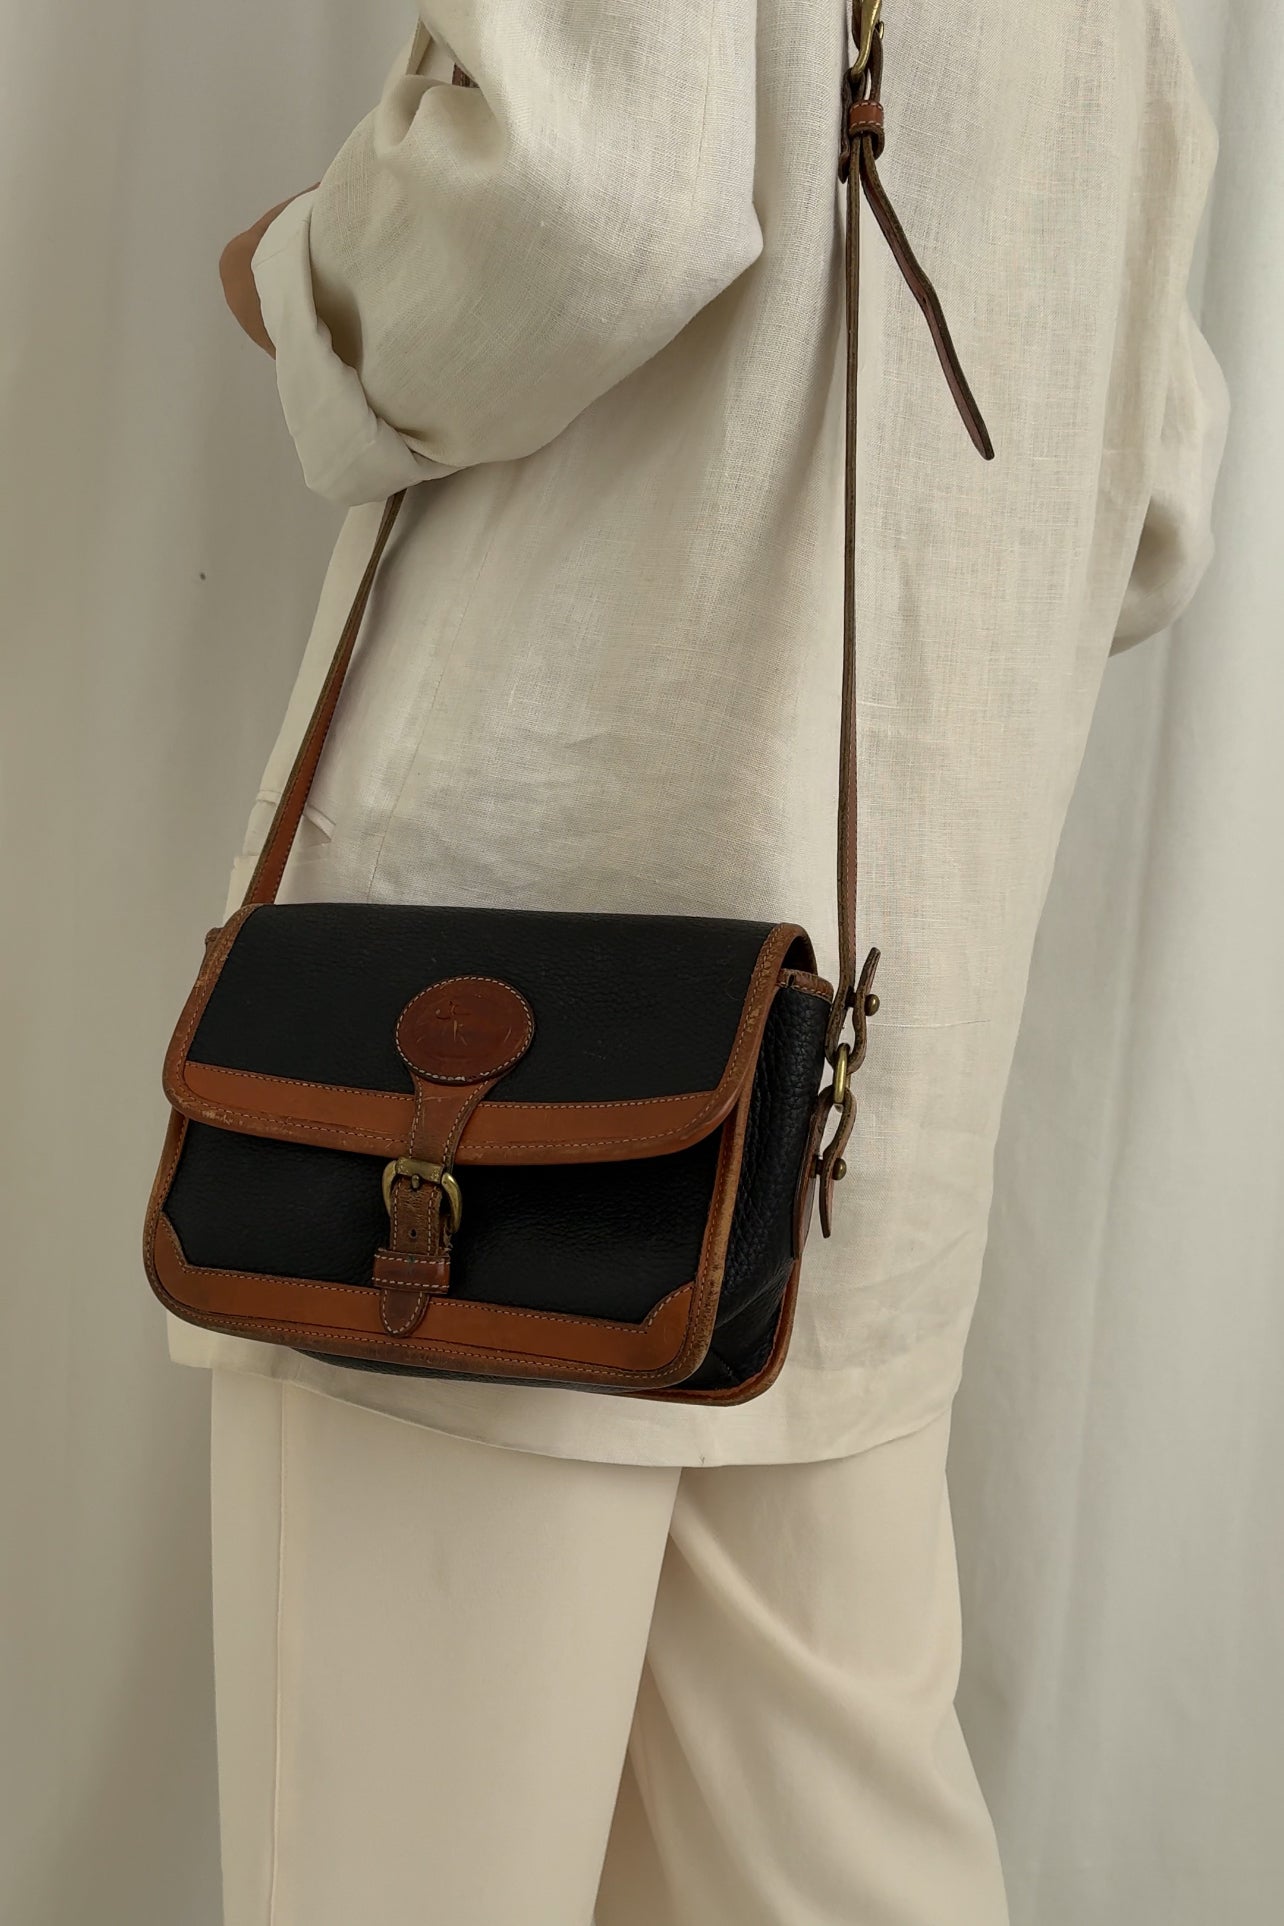 Vintage Sable Noir Dooney & Bourke Leather Shoulder Bag